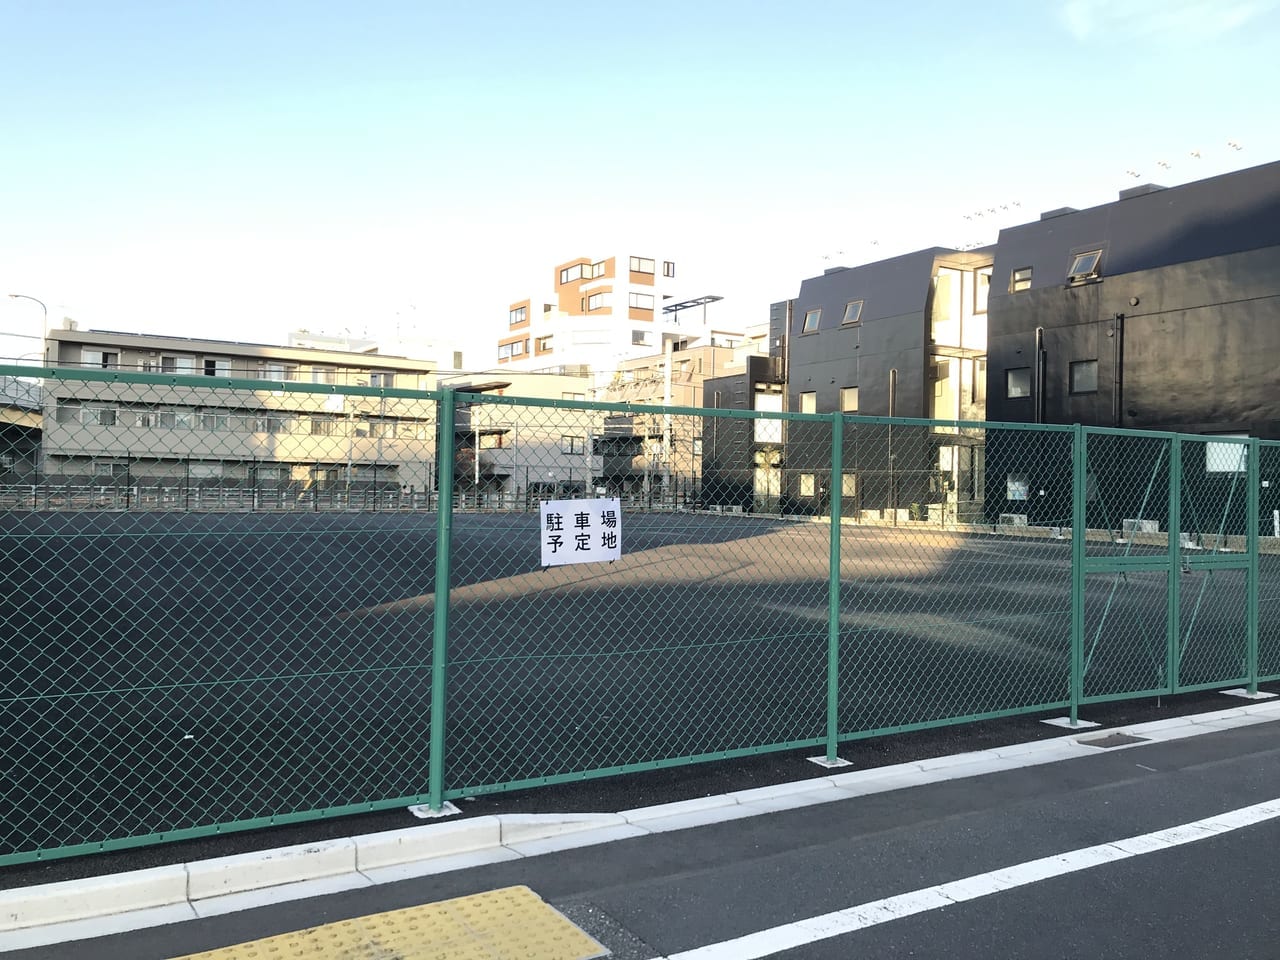 世田谷区玉川総合支所の仮庁舎跡地はパーキングになる模様。